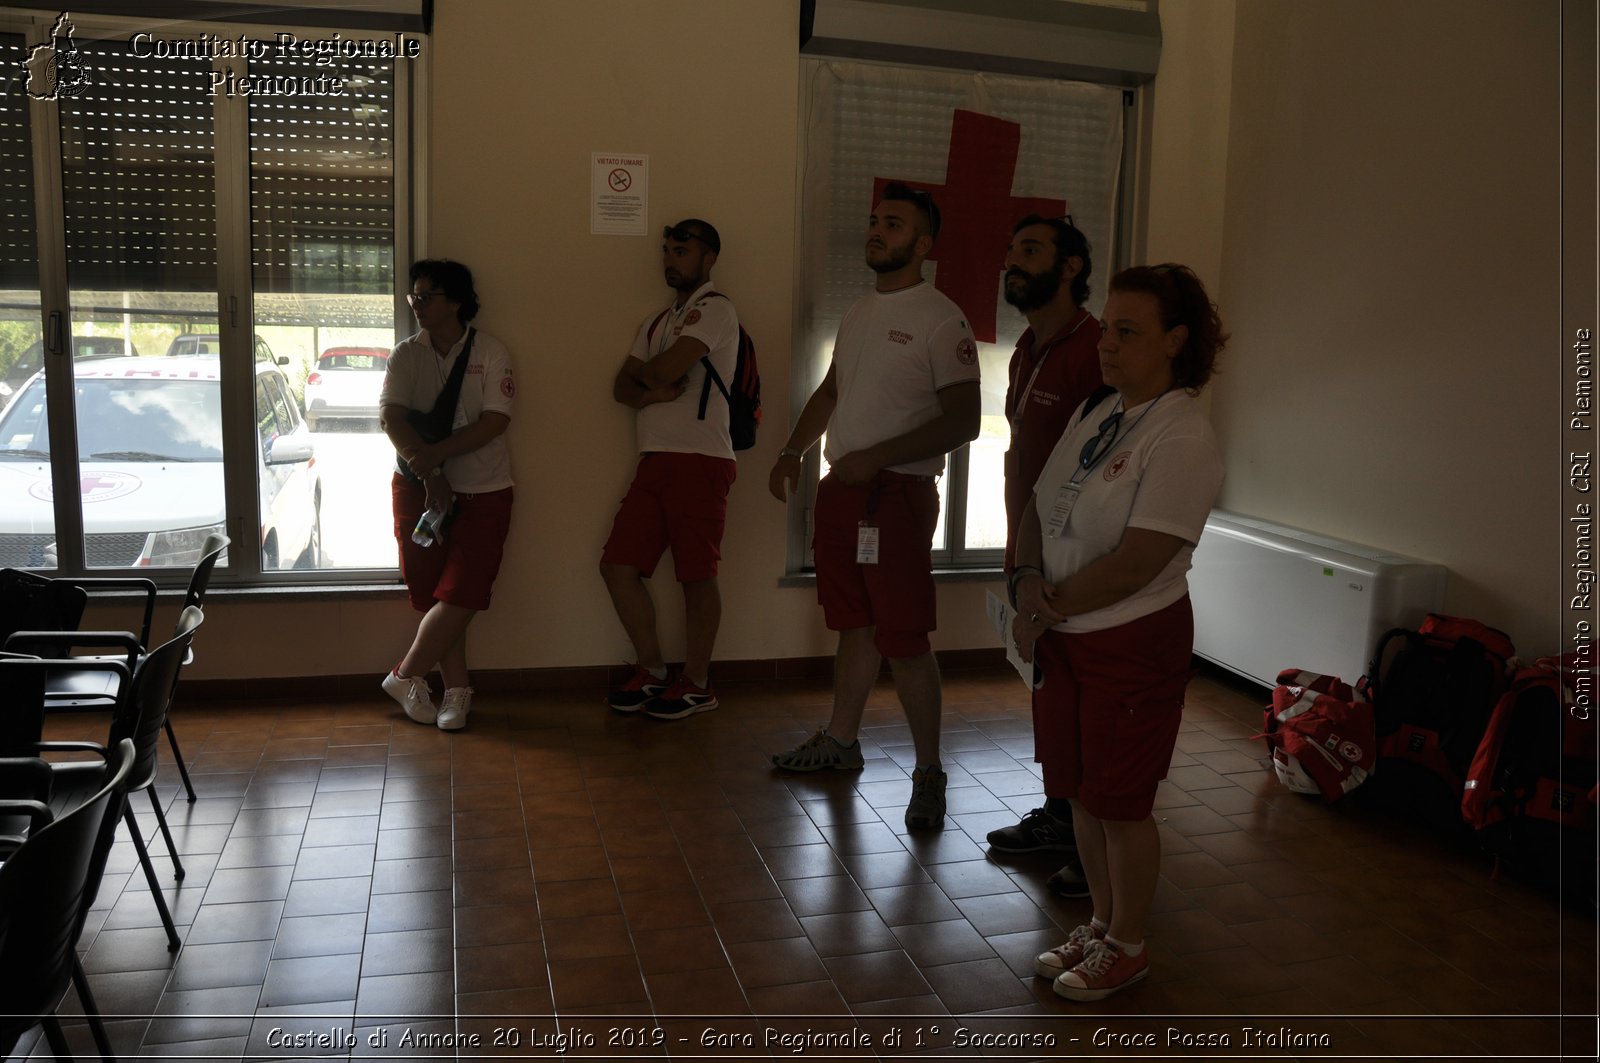 Castello di Annone 20 Luglio 2019 - Gara Regionale di 1 Soccorso - Croce Rossa Italiana - Comitato Regionale del Piemonte